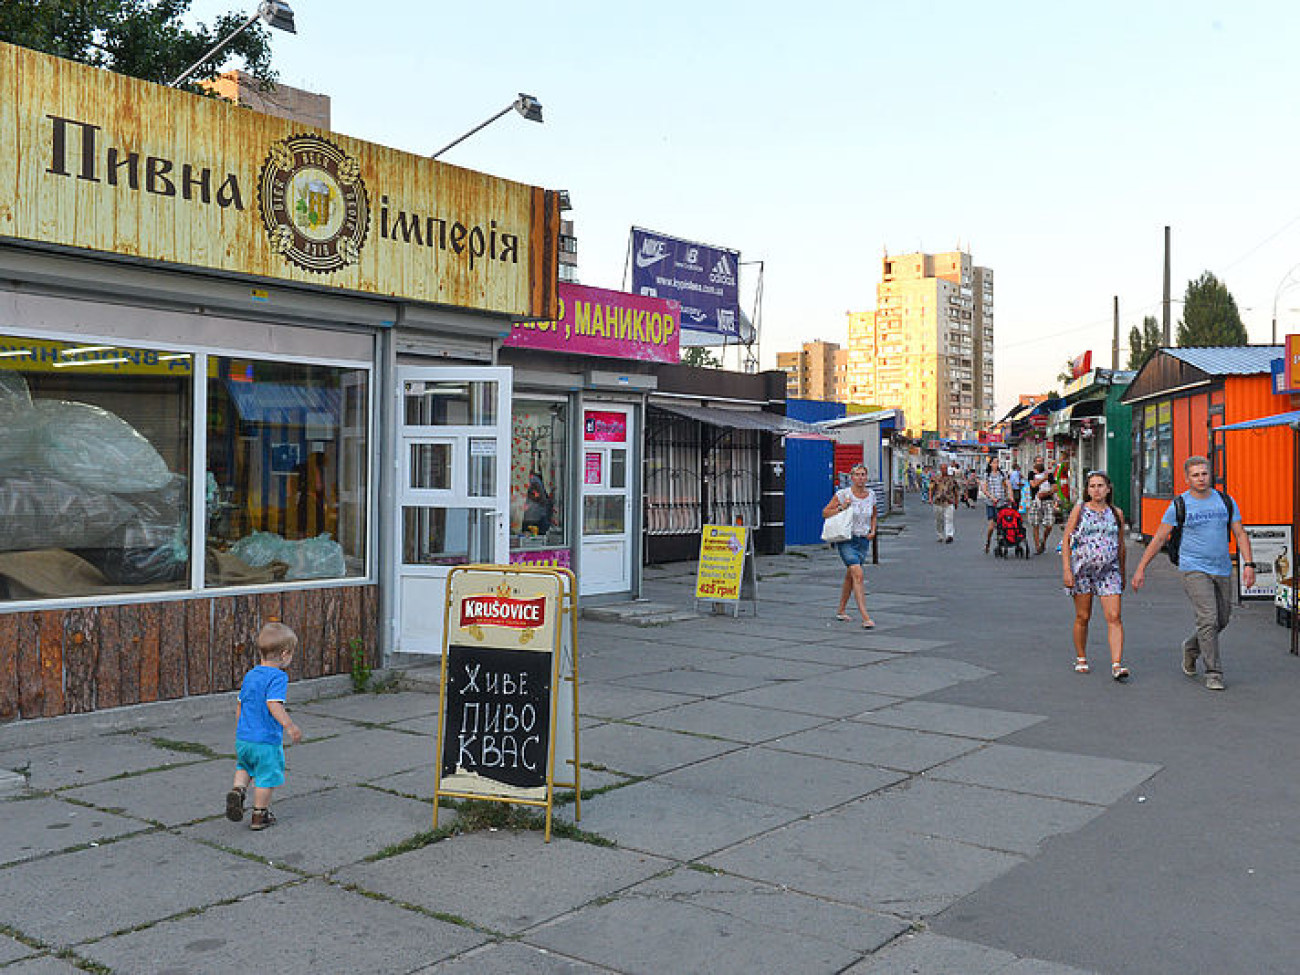 В киосках Киева продолжают продавать пиво, пренебрегая законодательными нововведениями